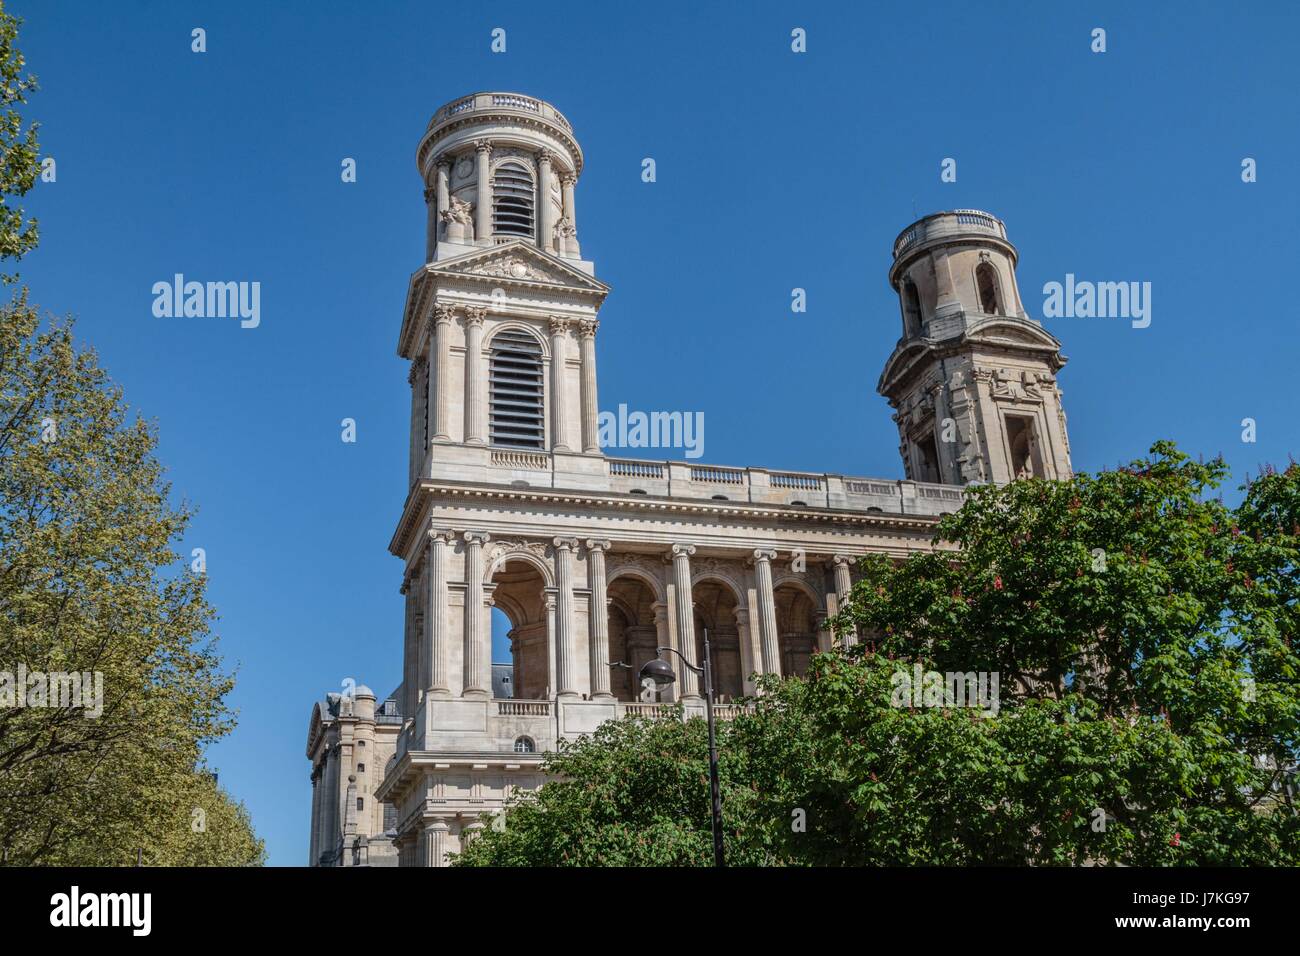 L'église Saint Sulpice est une grande église du Quartier de l'Odéon dans le 6e arrondissement de Paris. Elle est située Place Saint Sulpice. Elle un po Foto Stock